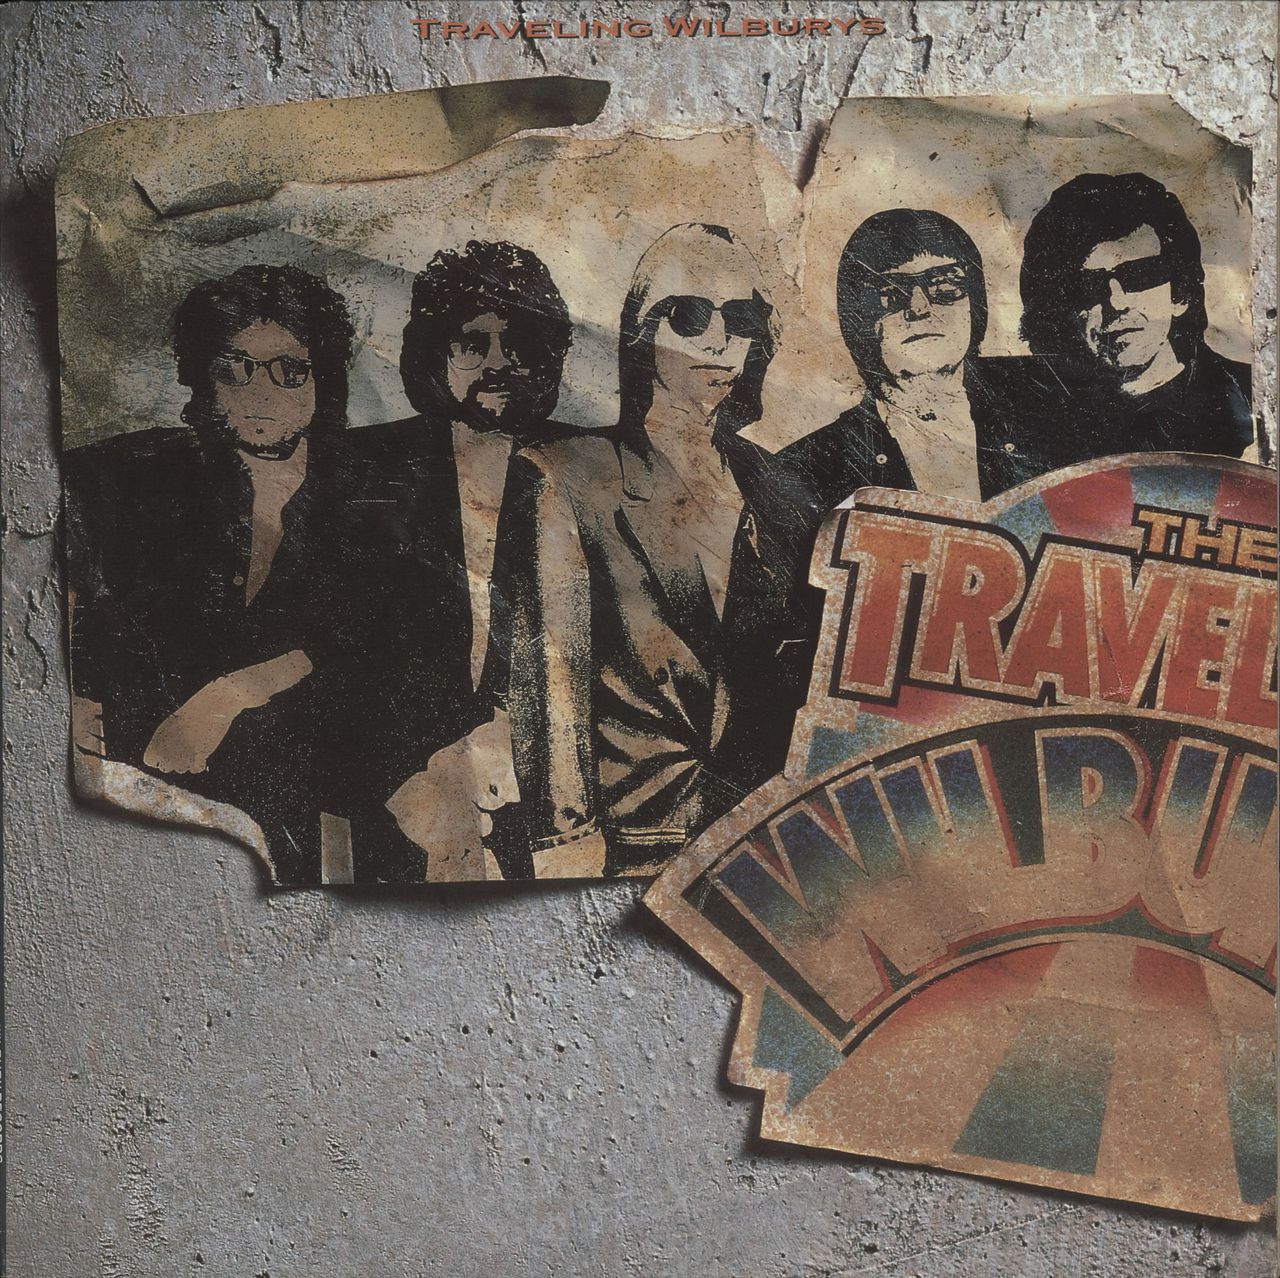 Traveling Wilburys Volume One EX US Vinyl LP — RareVinyl.com